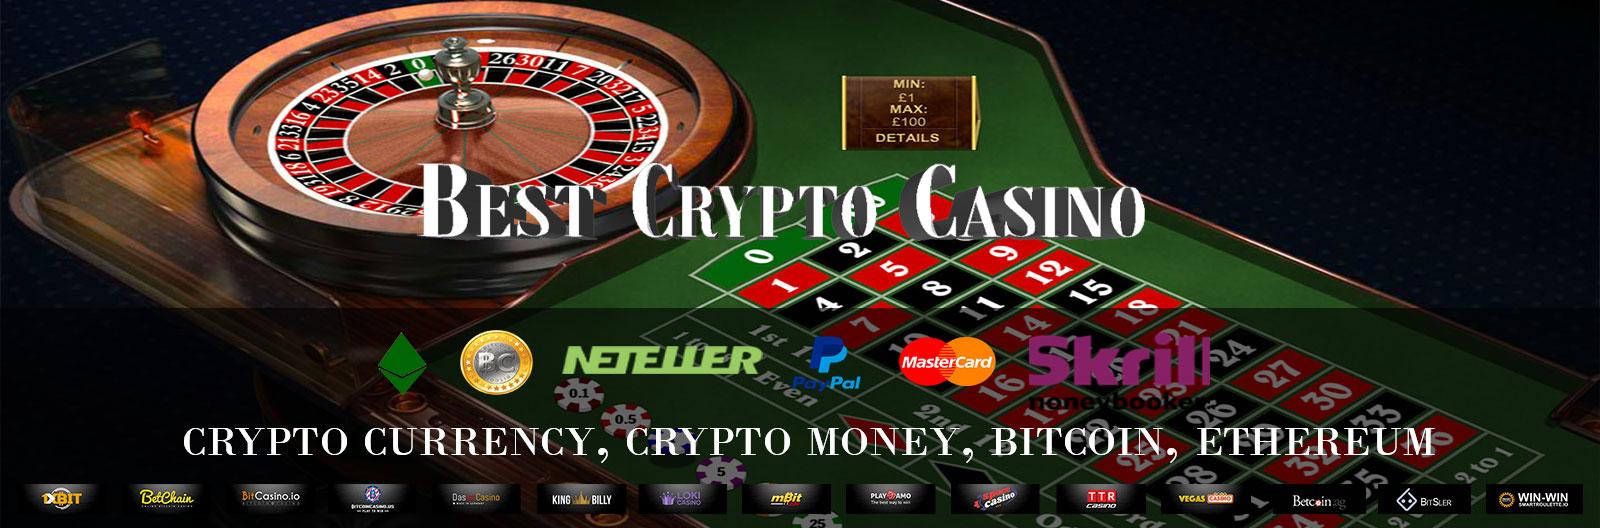 Real money online bitcoin casino oklahoma